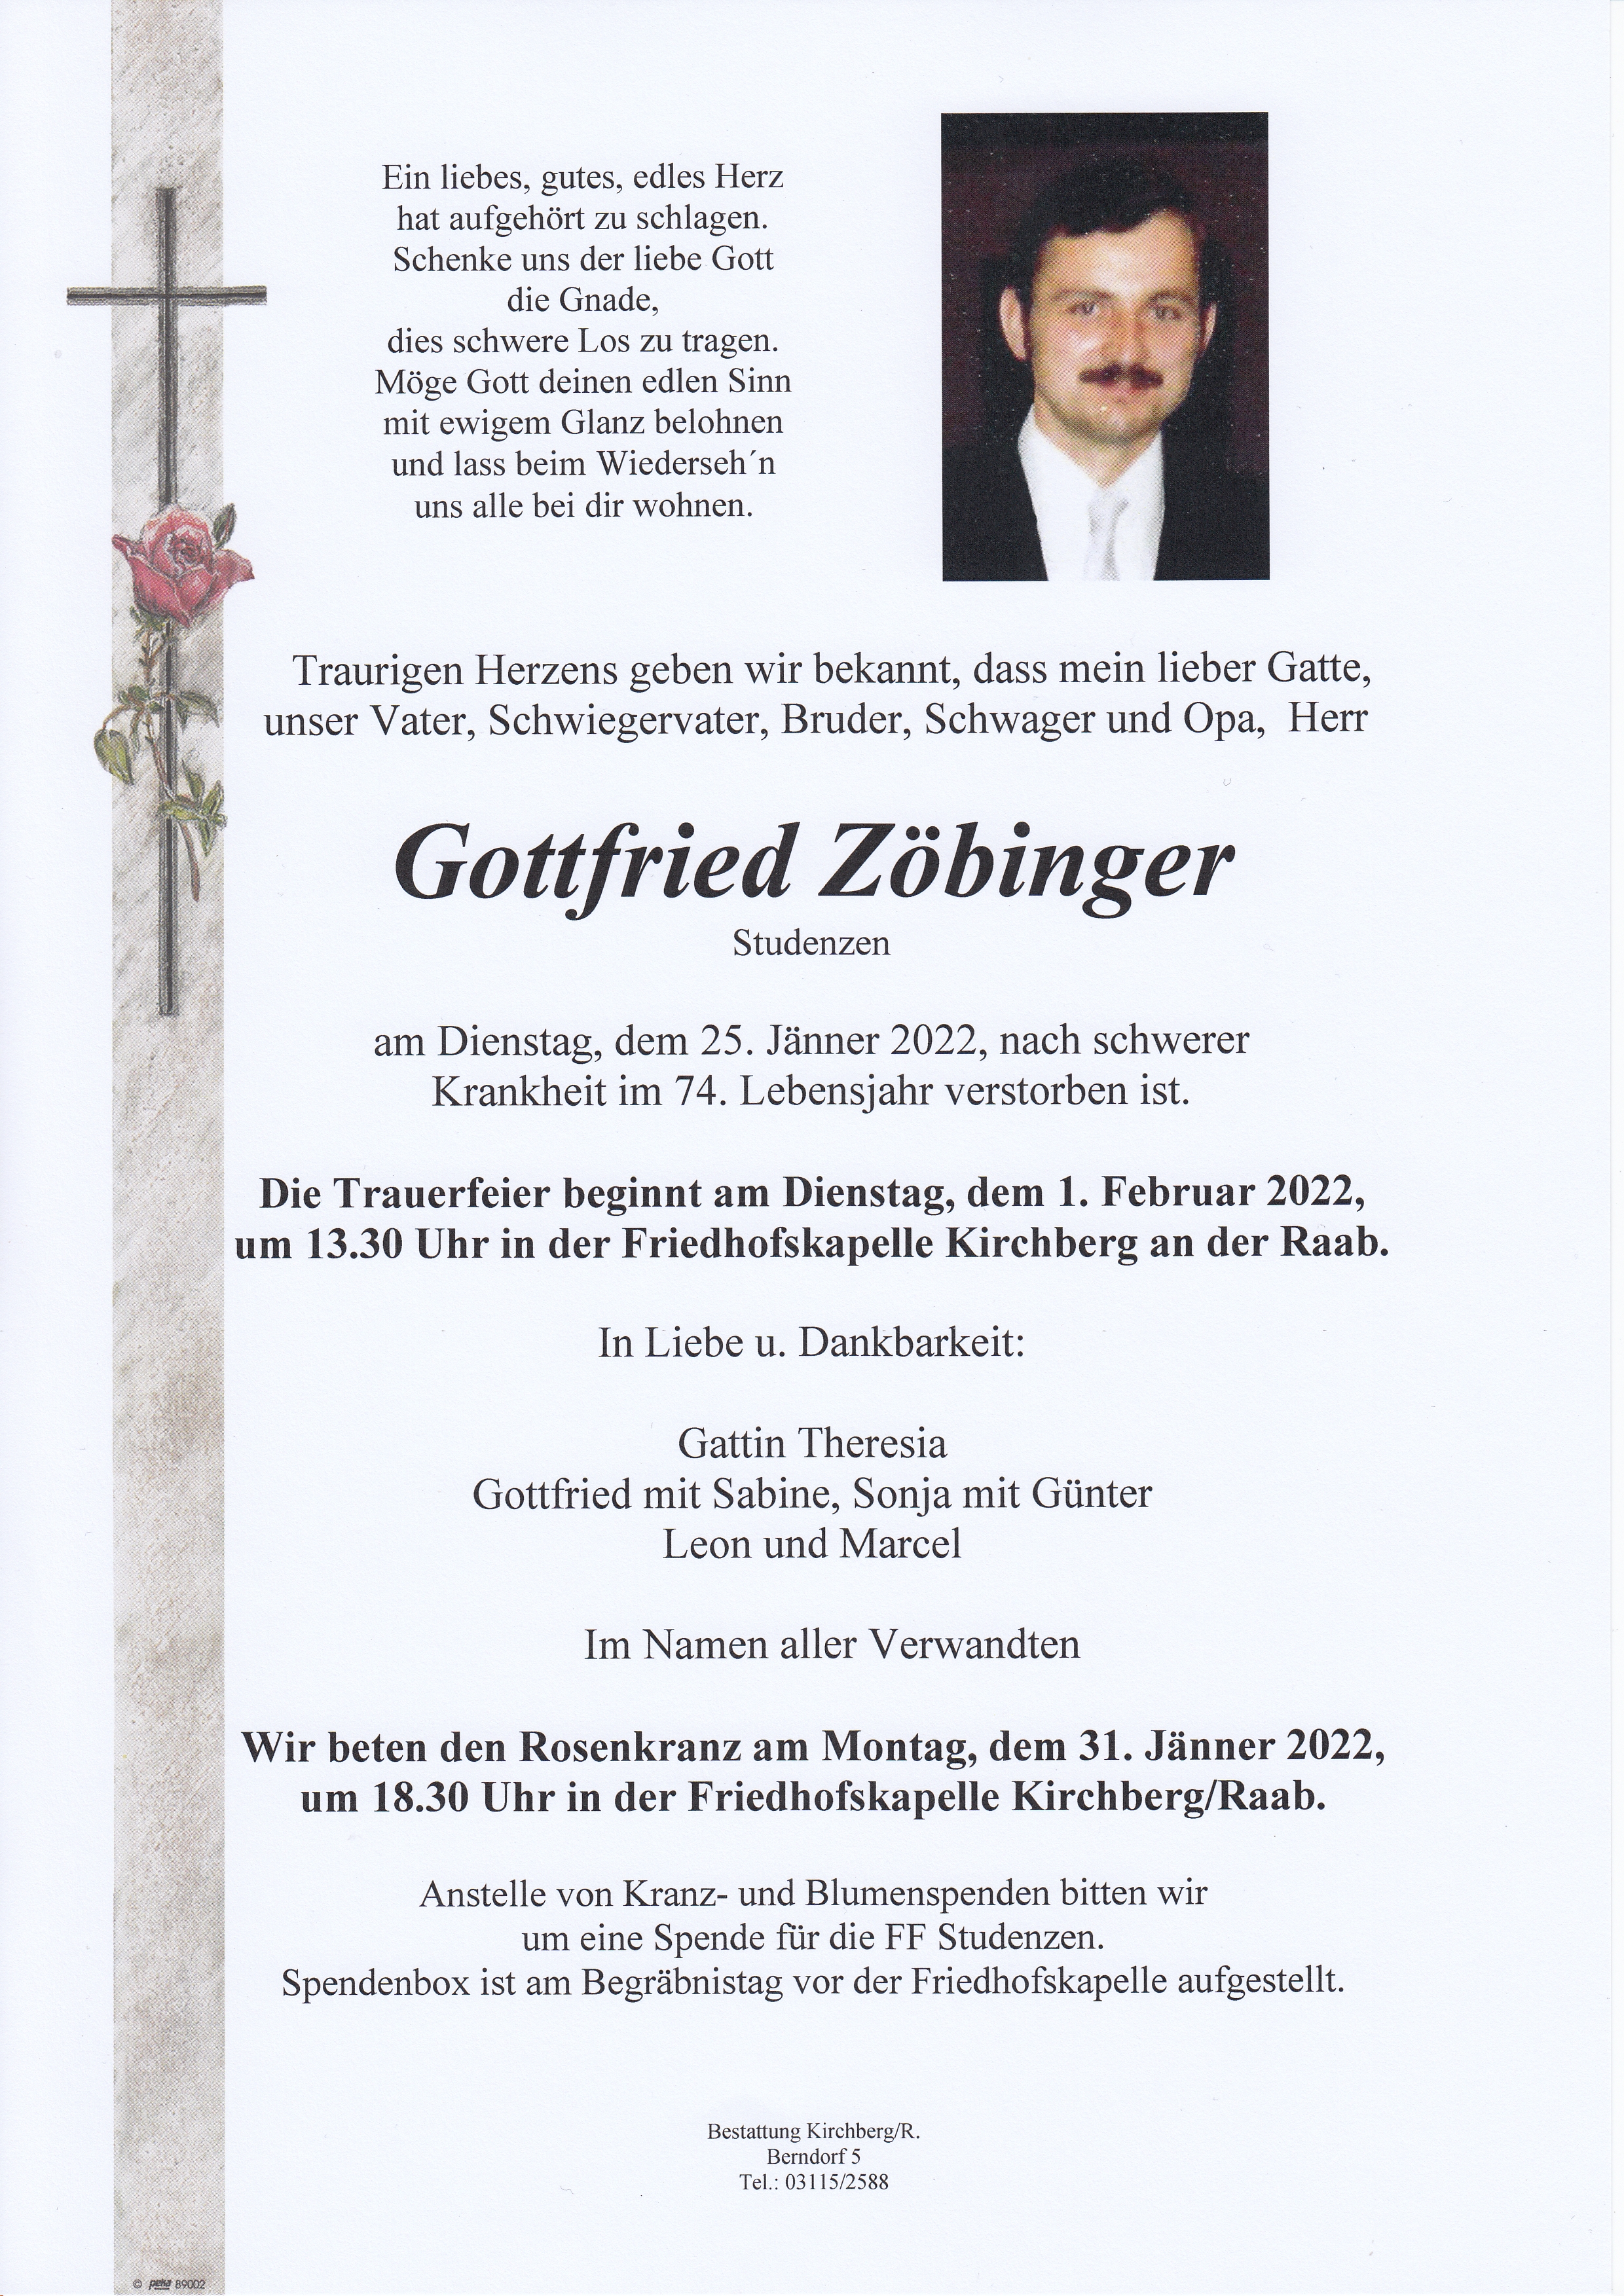 Gottfried Zöbinger